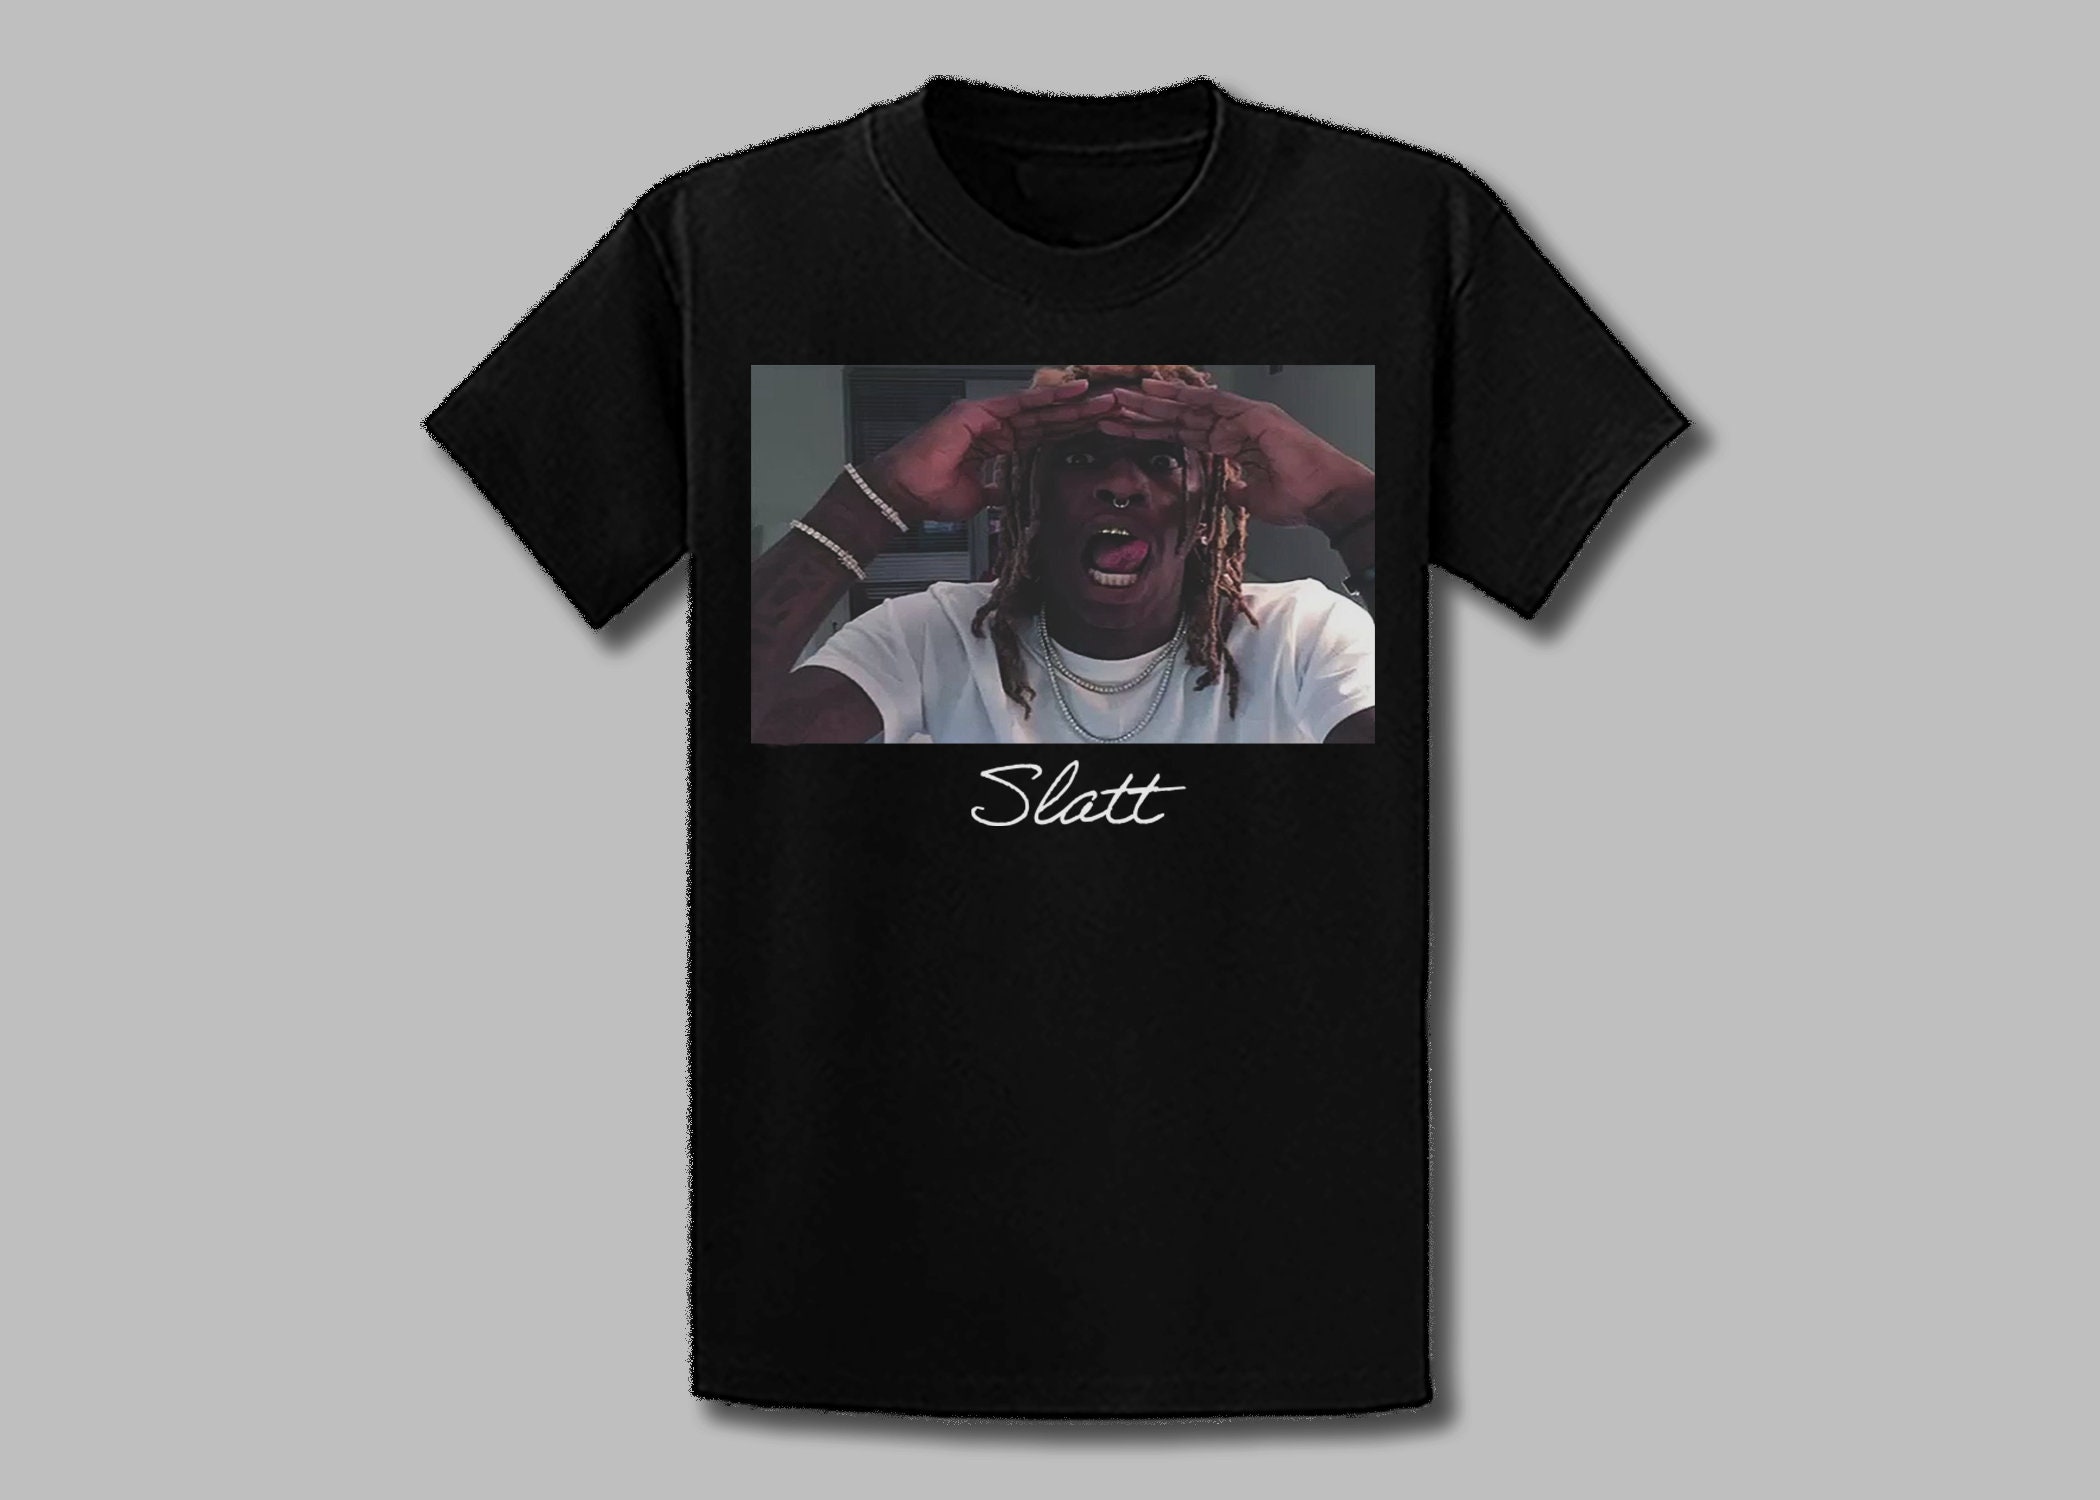 Discover Young Thug T-shirt, Young Thug graphic tee shirt, hip hop tee shirt